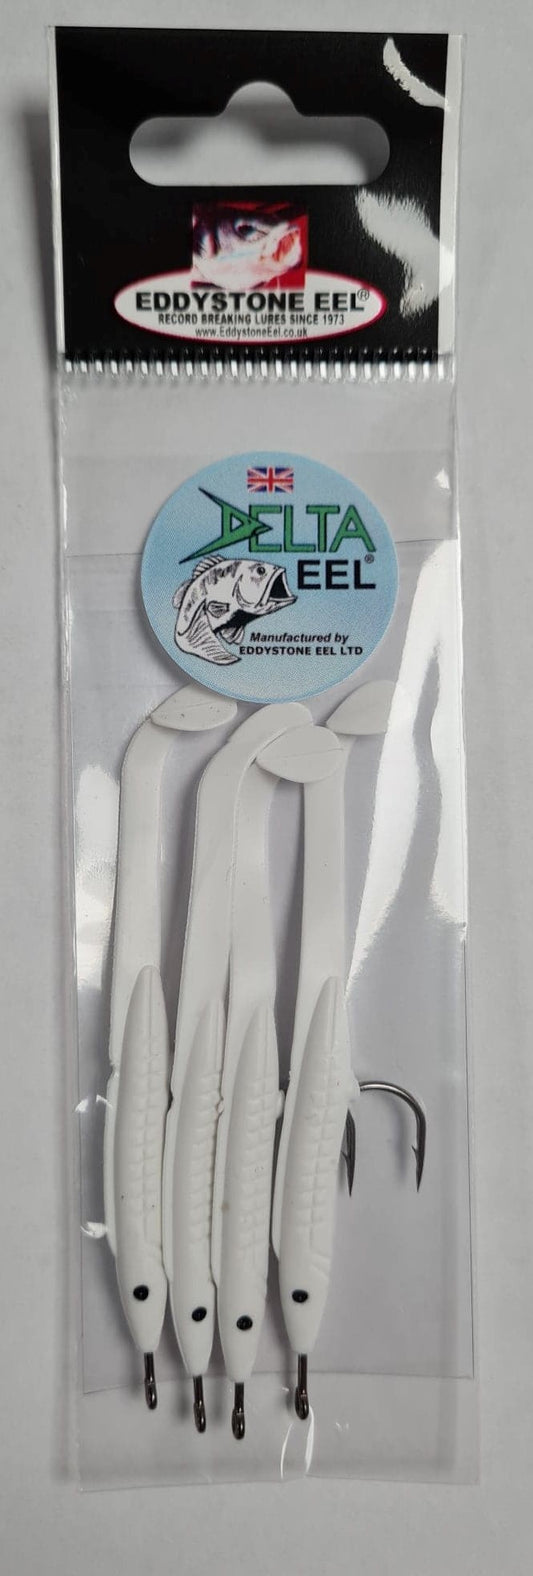 Eddystone Delta Eels No 1 - White - (4)